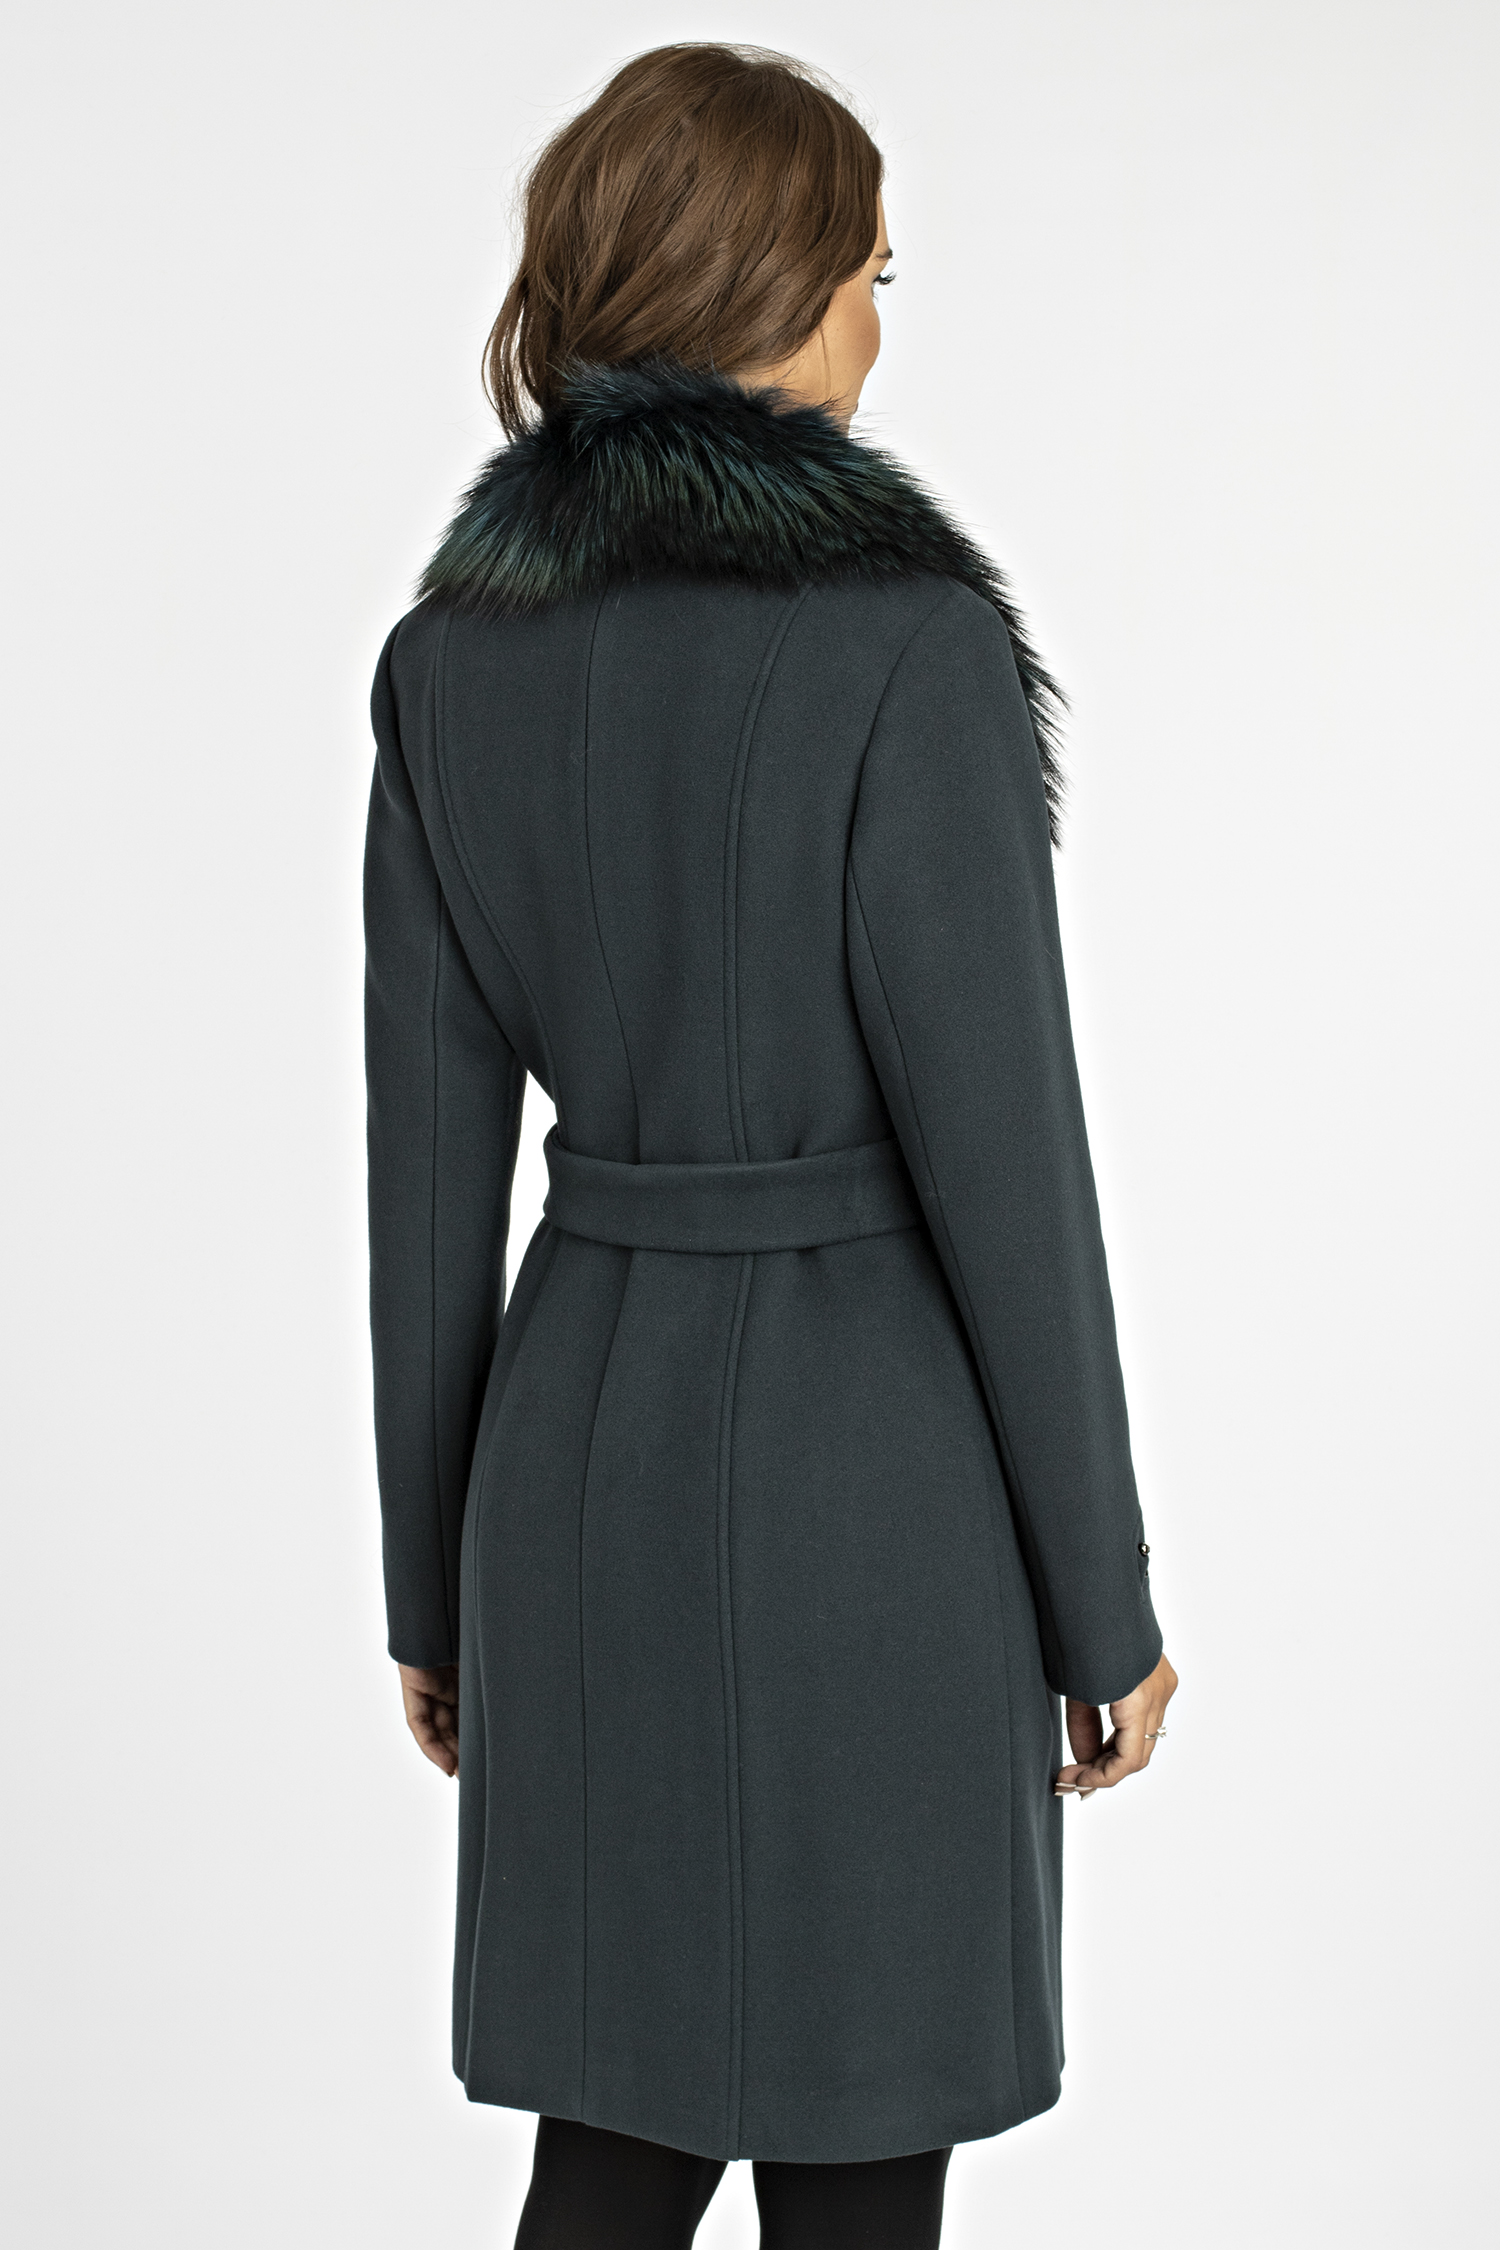 Женское пальто из текстиля с воротником, отделка енот